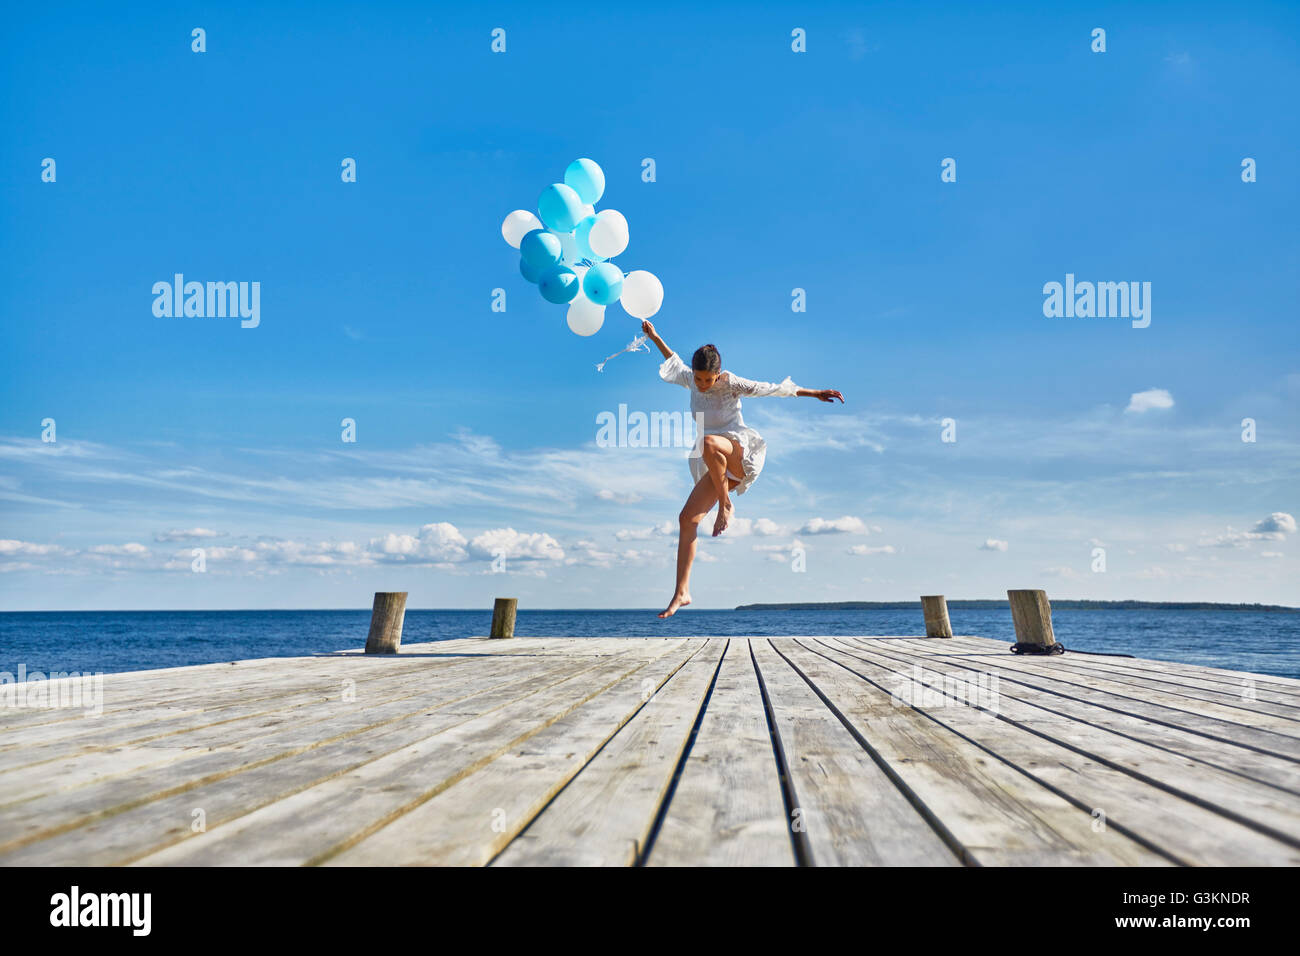 Jeune femme dansant sur jetée en bois, holding bunch of balloons Banque D'Images